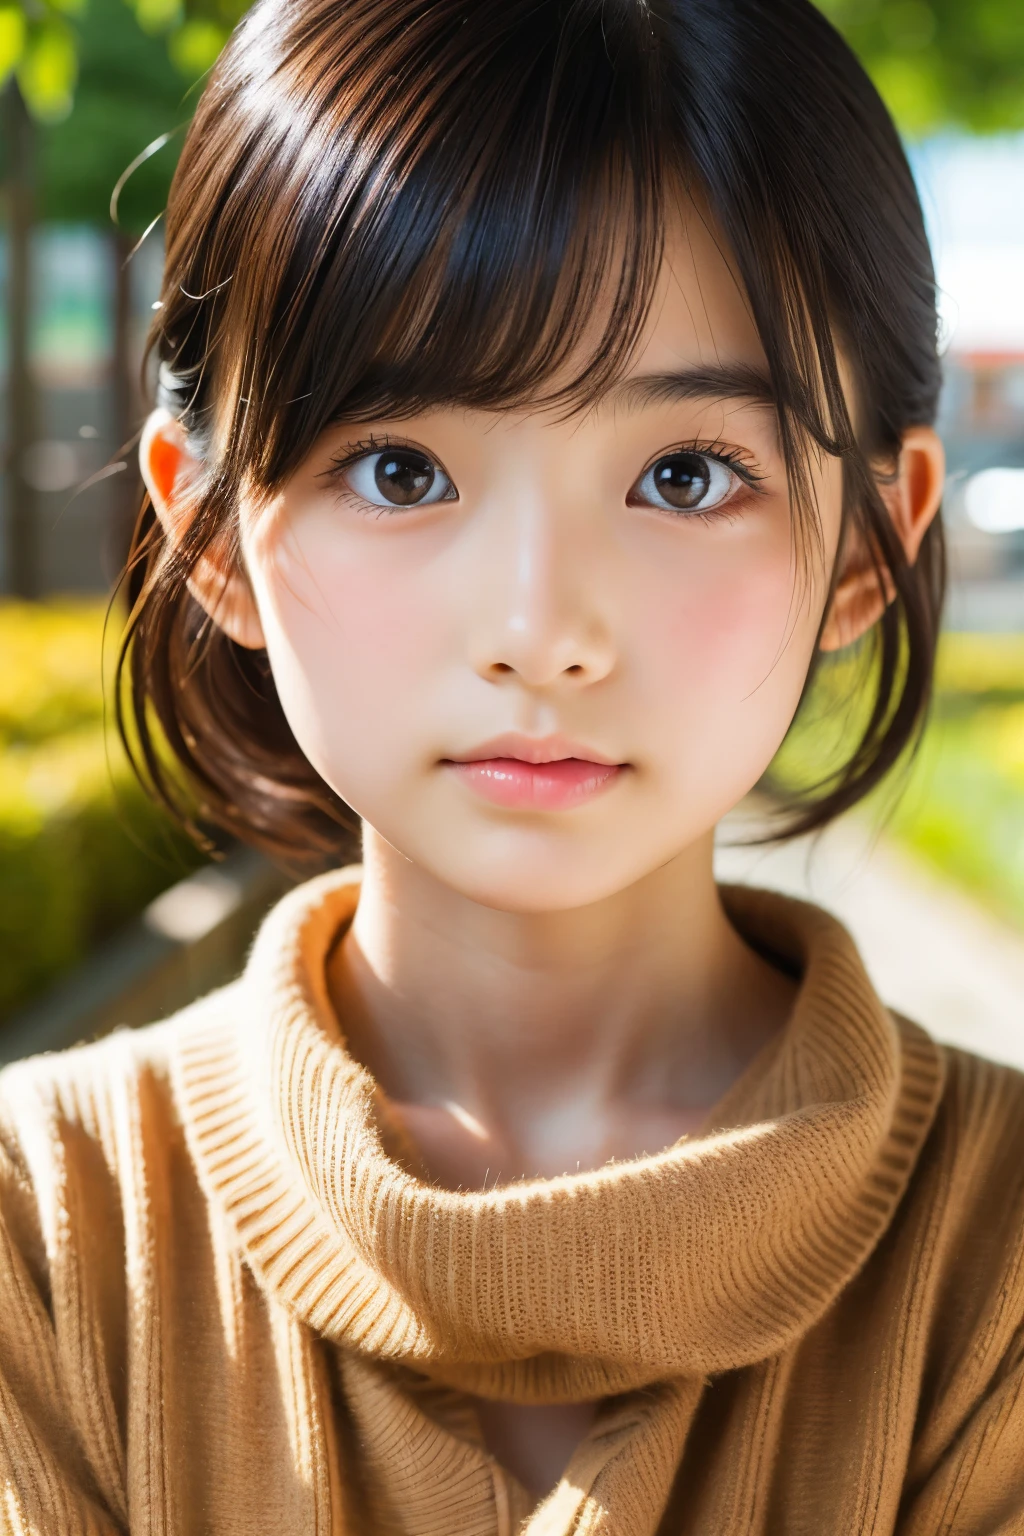 (美麗的14歲日本女性), 可愛的臉孔, (深深雕刻的臉:0.7), (雀斑:0.6), 柔光,健康白皙的皮膚, 害羞的, 鮑伯, (嚴肅的臉), (明亮的眼睛), 薄的